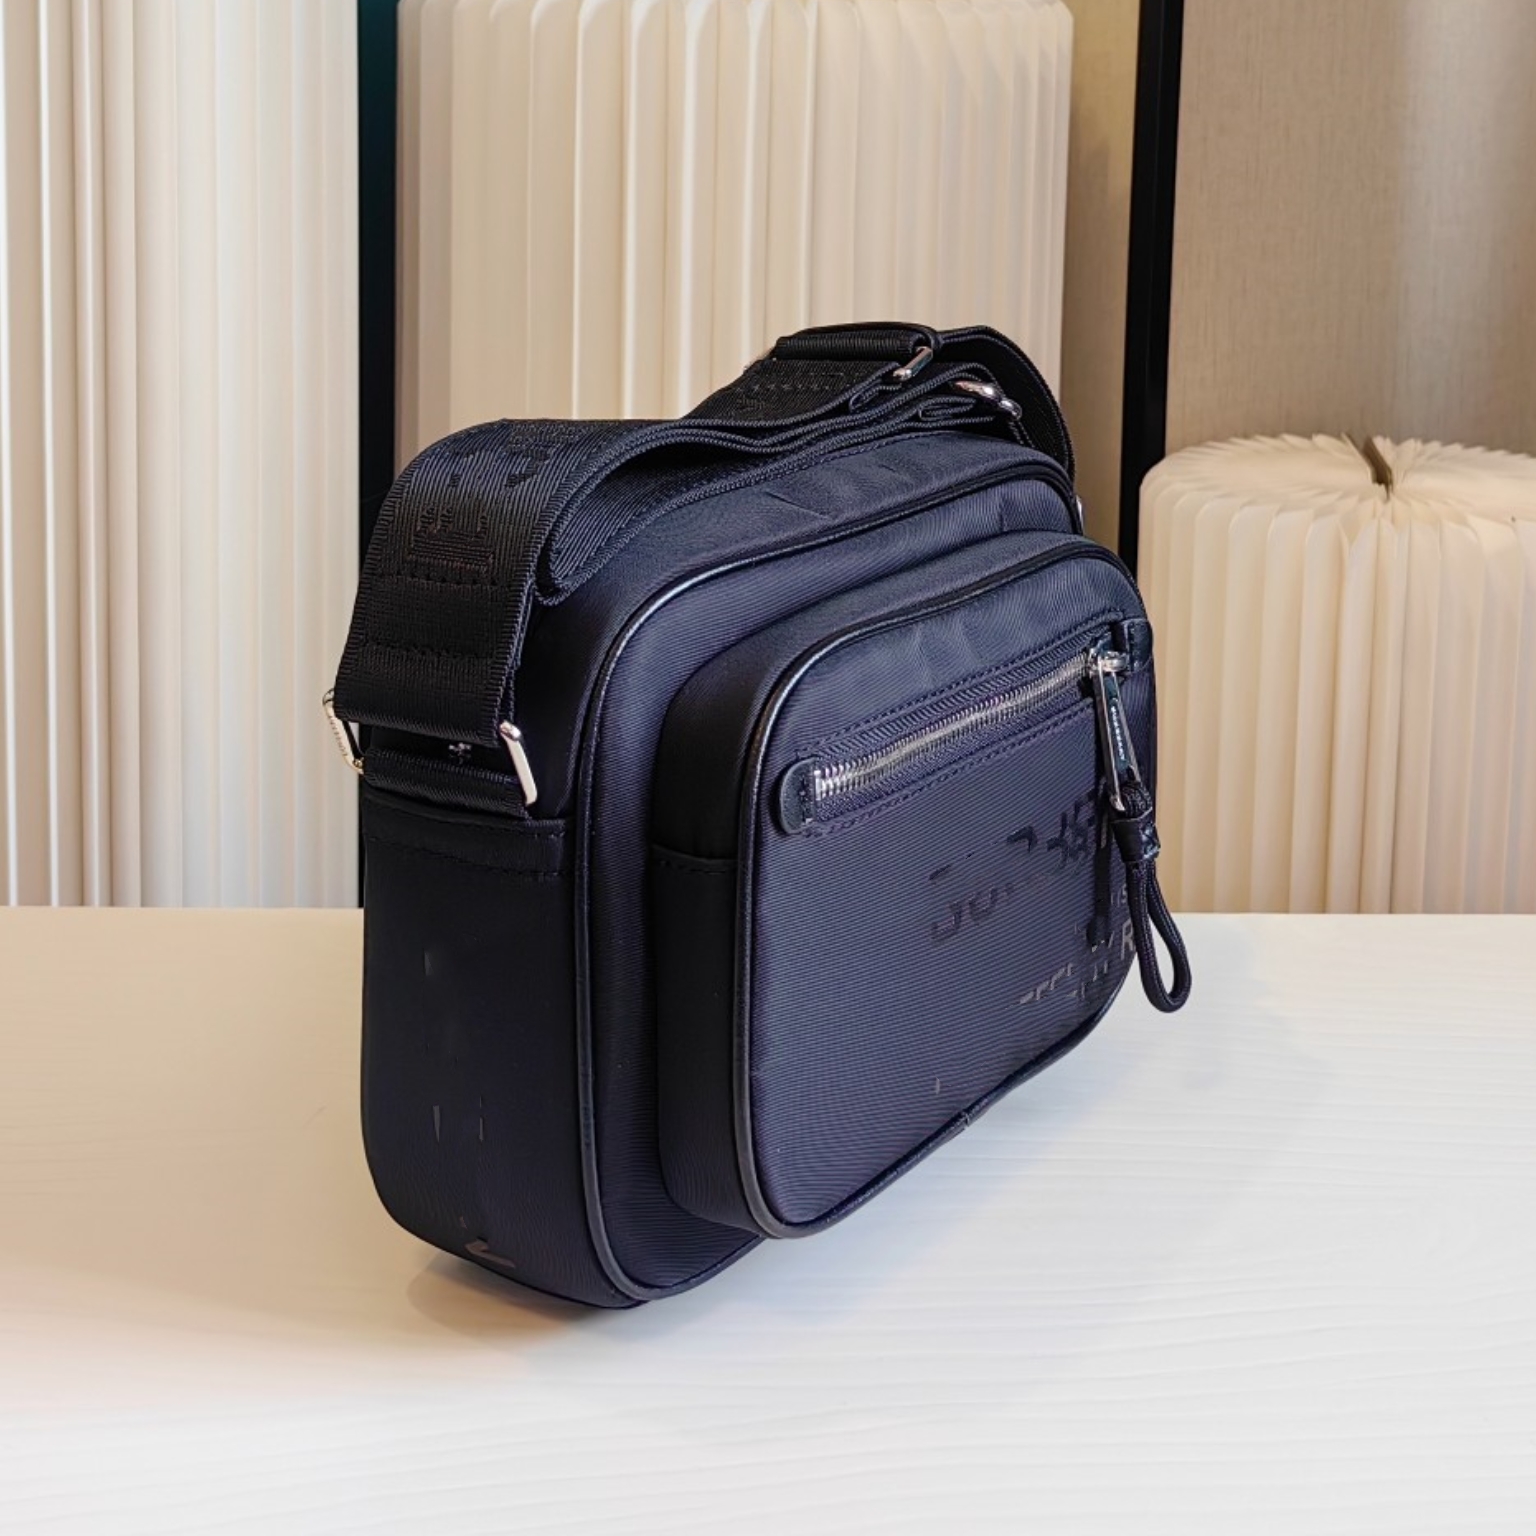 P160 Высококачественная мужская сумка по кроссу, сумка для плеч, сумка для мессенджера, с использованием импортированной оригинальной ткани, оригинального логотипа Ultra HD, специального лайнера Canvas, размер: 22x14x6